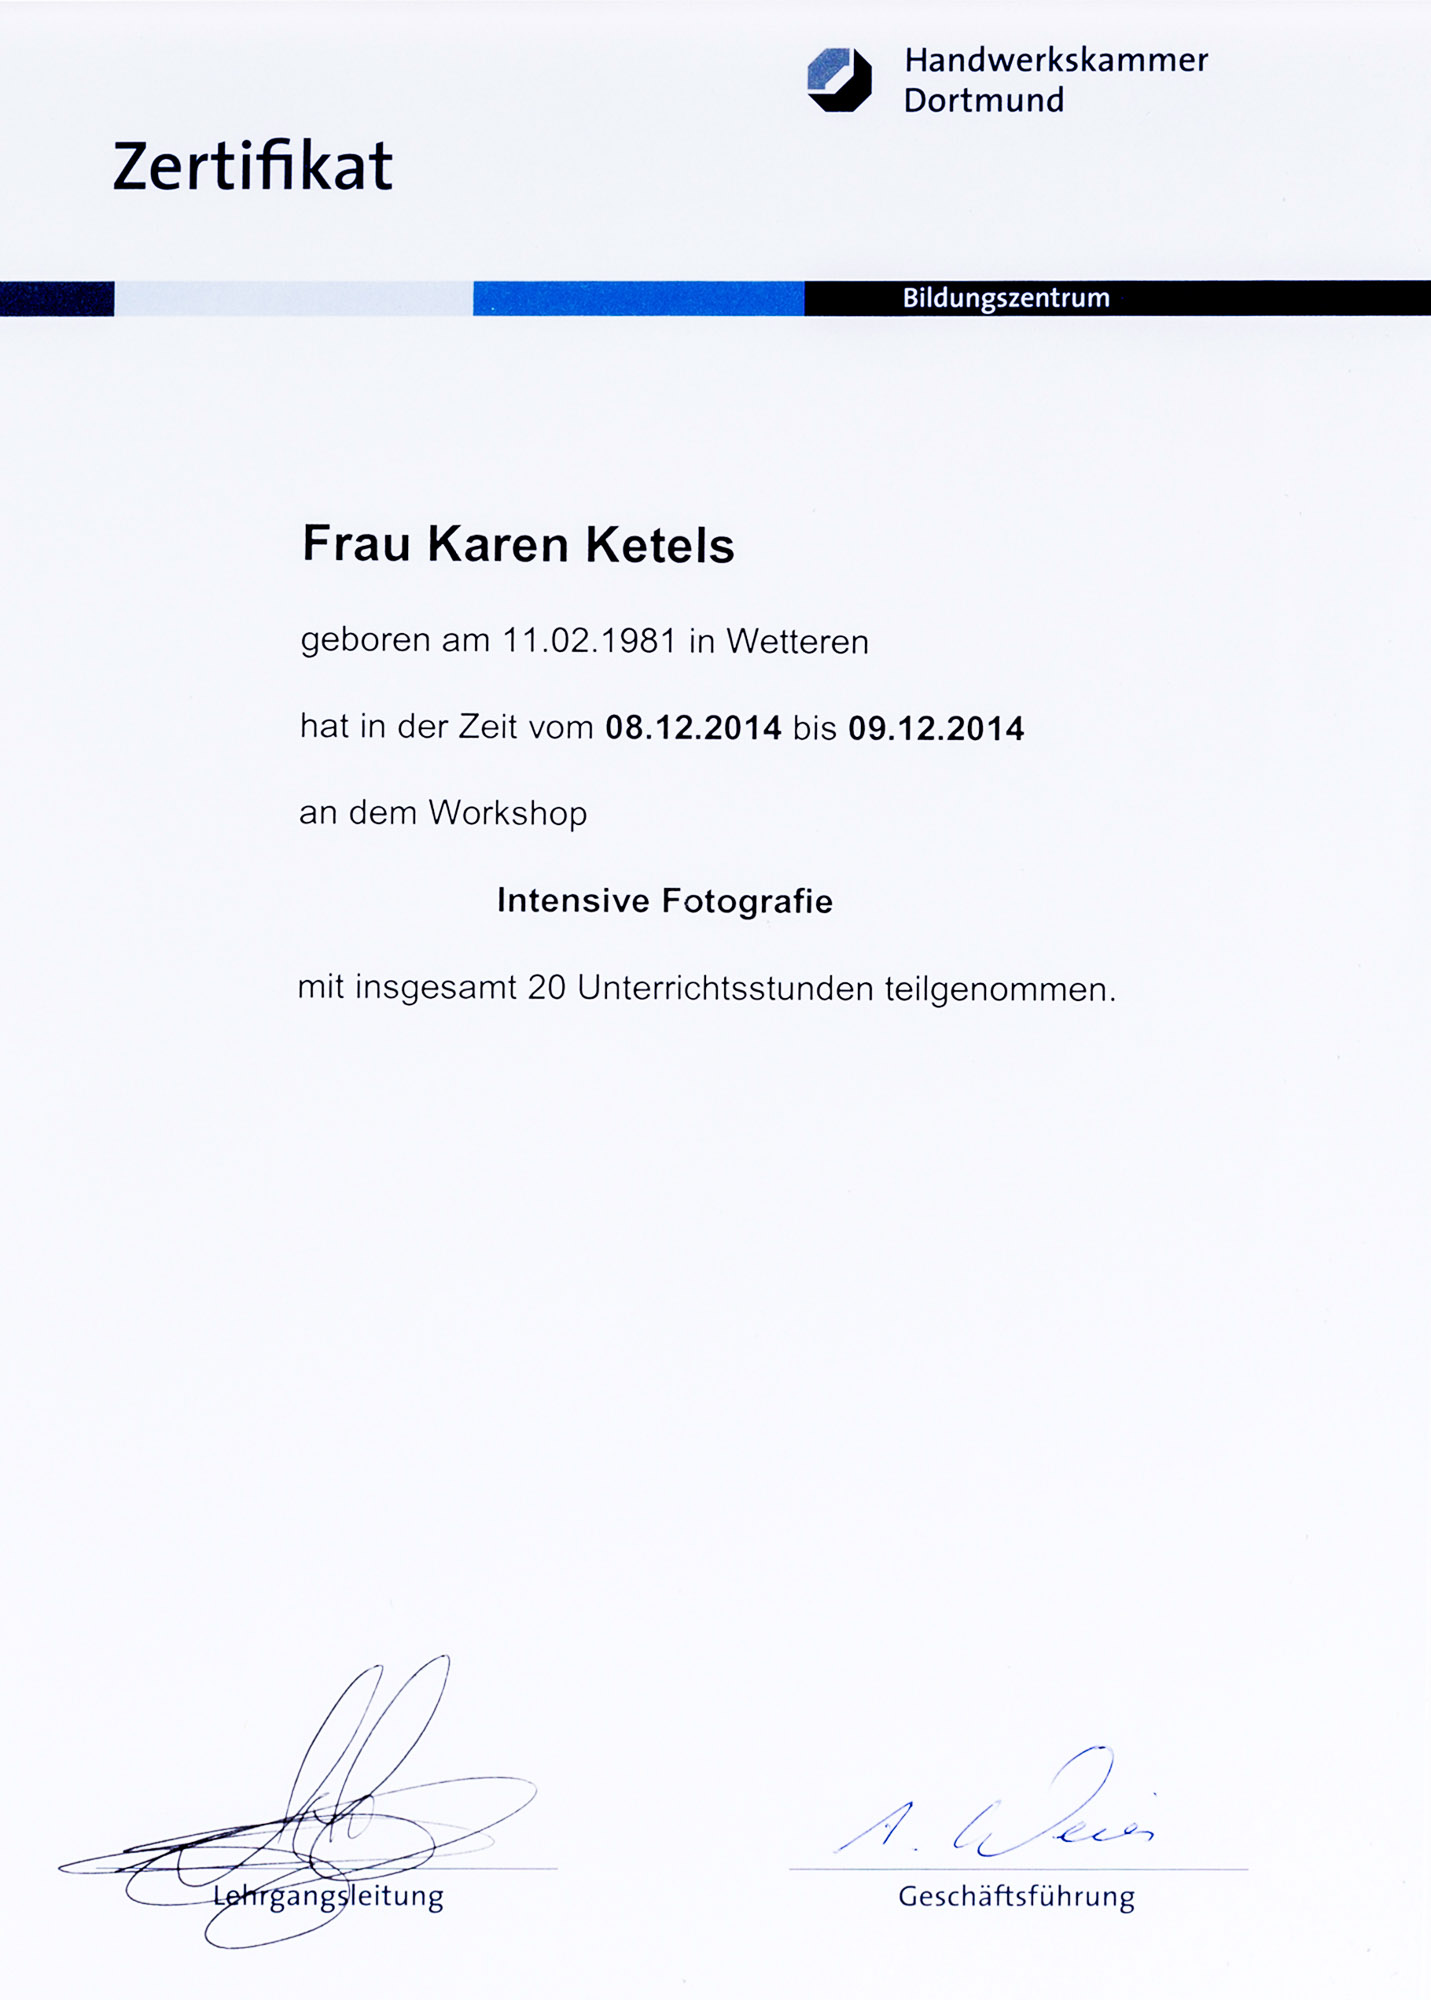 Karen Ketels zertifikat masterclass Andy Hens, Handwerkskammer Dortmund 2014